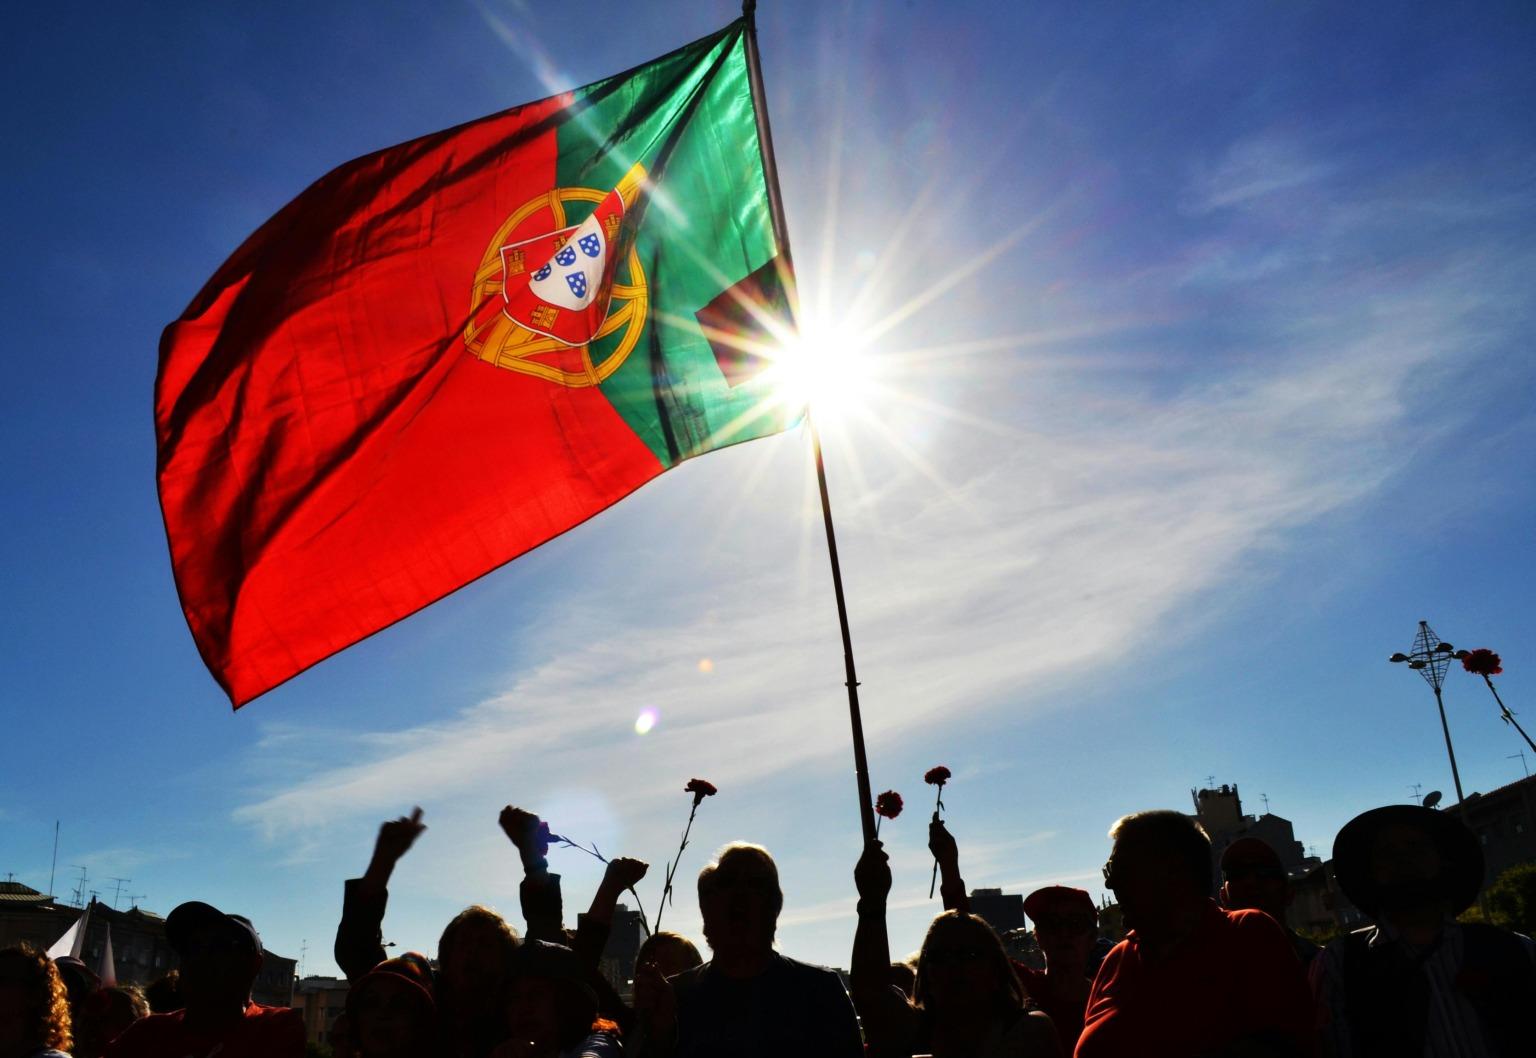 Le drapeau portugais est agité par des personnes brandissant des œillets pour célébrer la révolution des œillets.